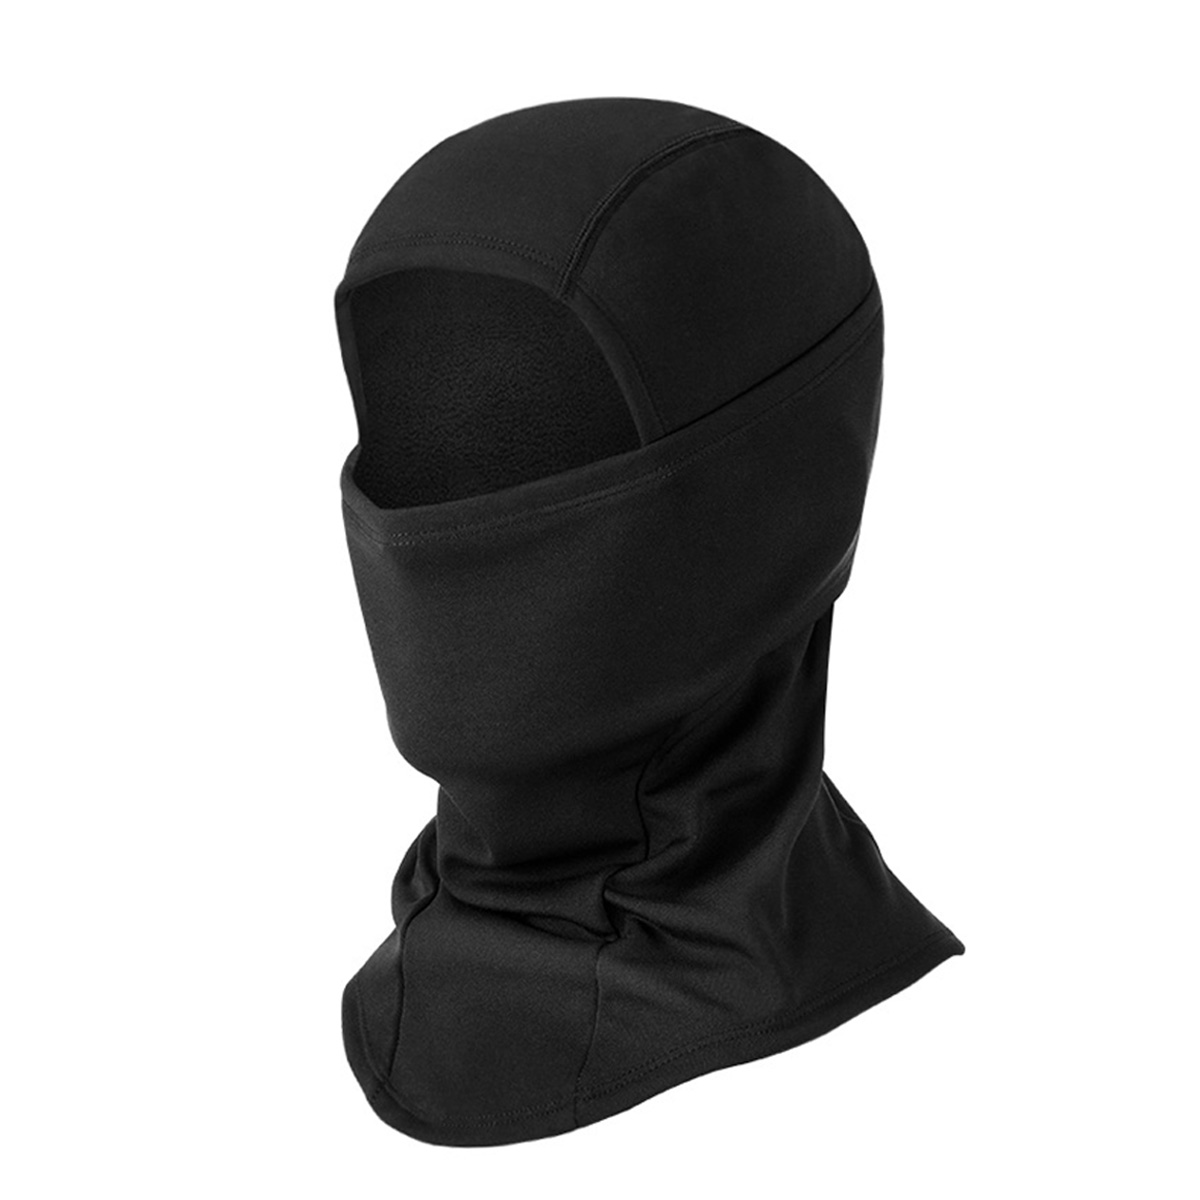 フェイスマスク 4way 3カラー バラクラバ 男女兼用 防寒 目出し帽 